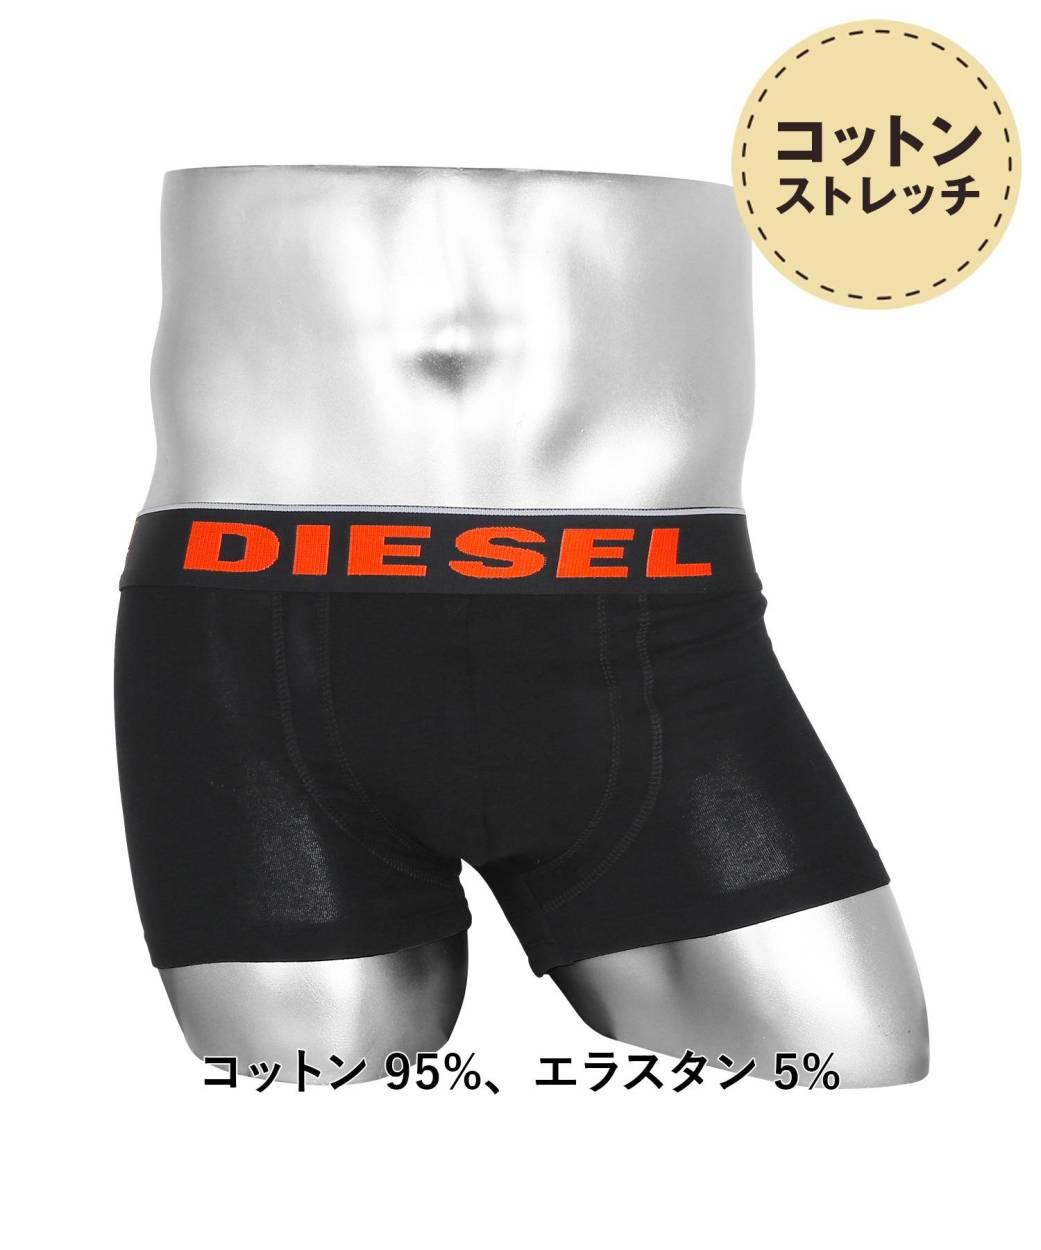 ディーゼル DIESEL ボクサーパンツ メンズ アンダーウェア 男性 下着 綿混 コットン ブランド ロゴ プレゼント ギフト